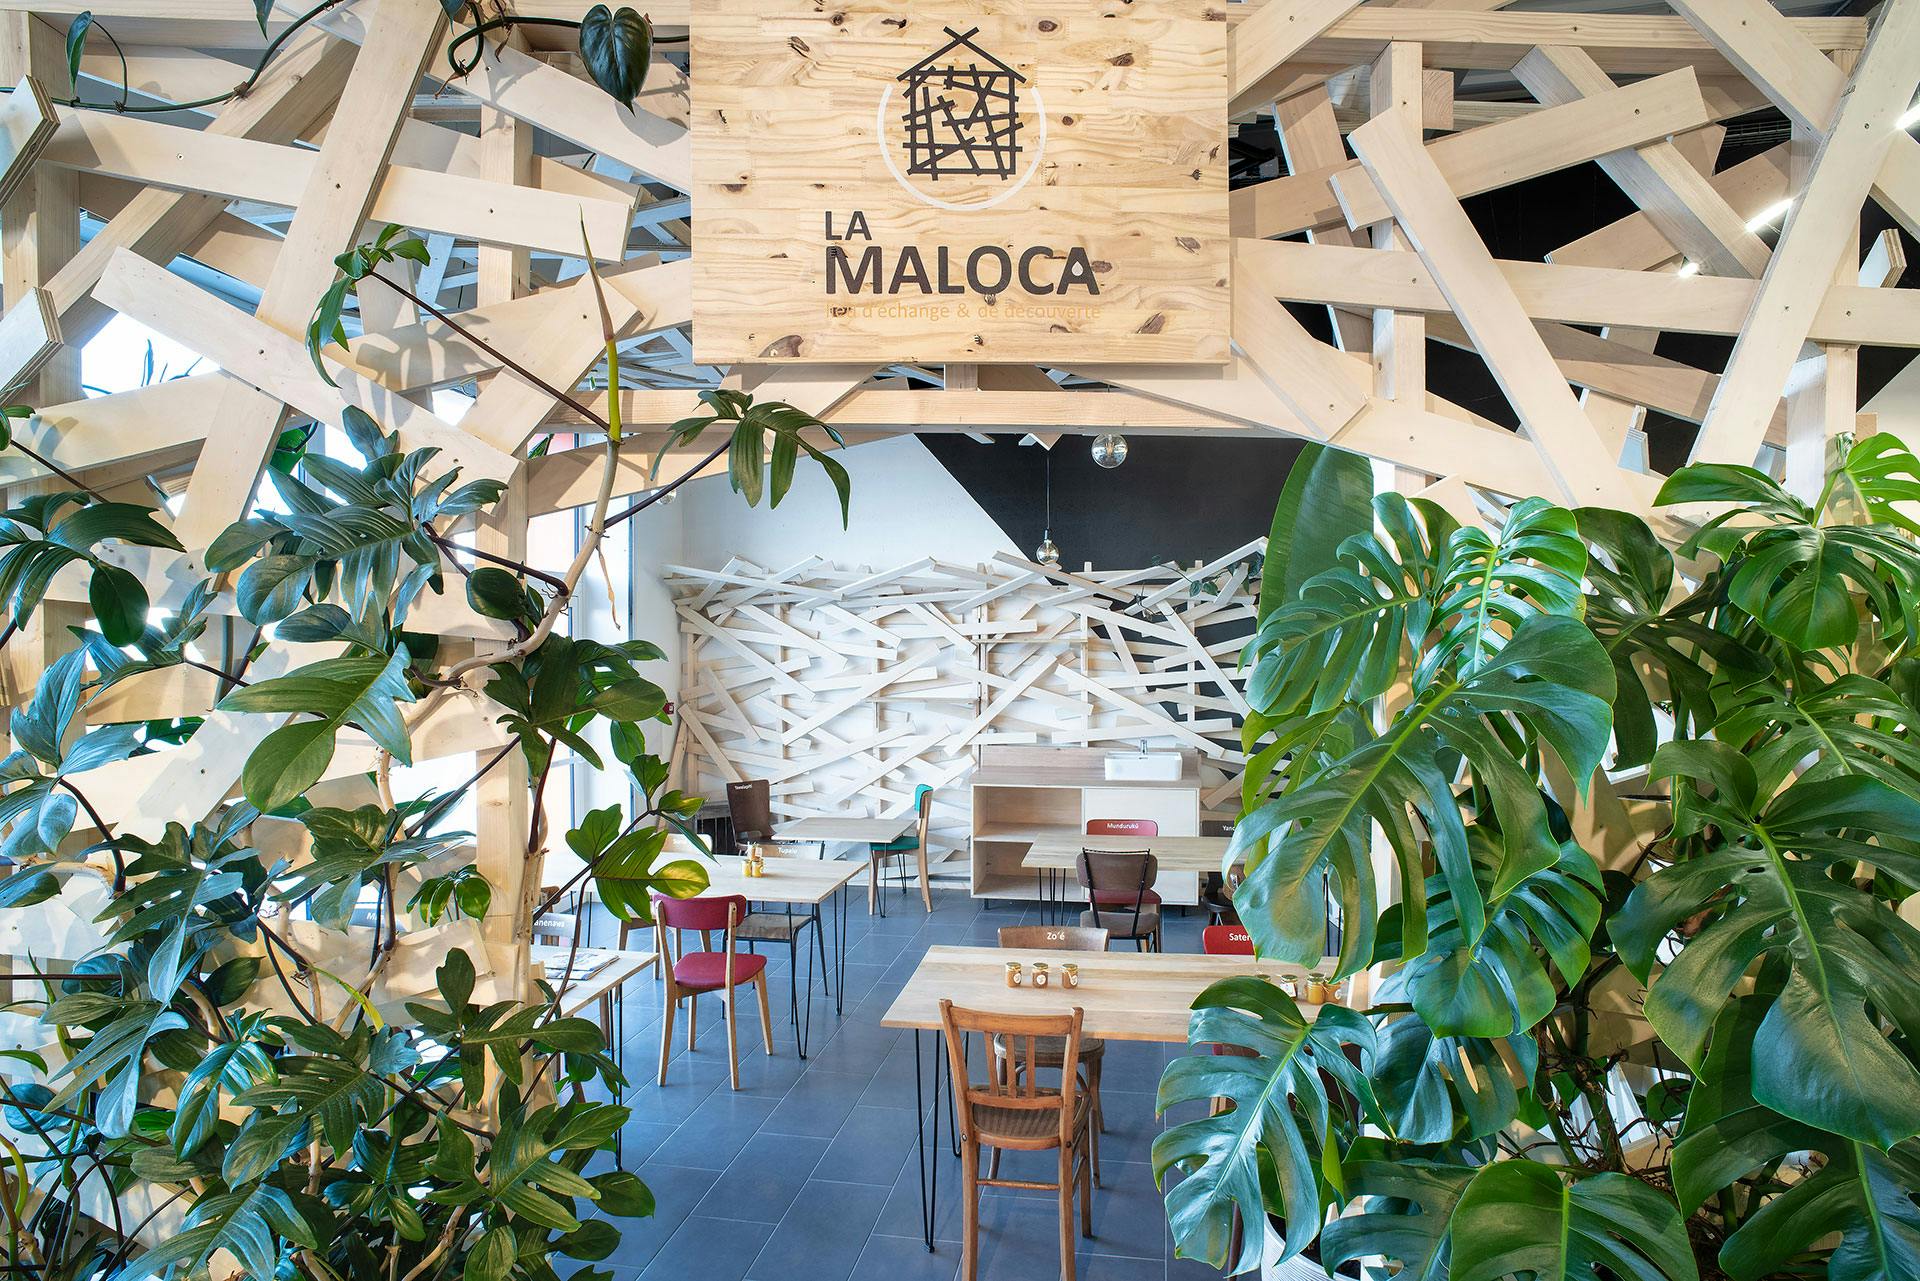 La Maloca, un nouvel espace tiers-lieux installé au cœur de la Biocoop du Sillon Bio.